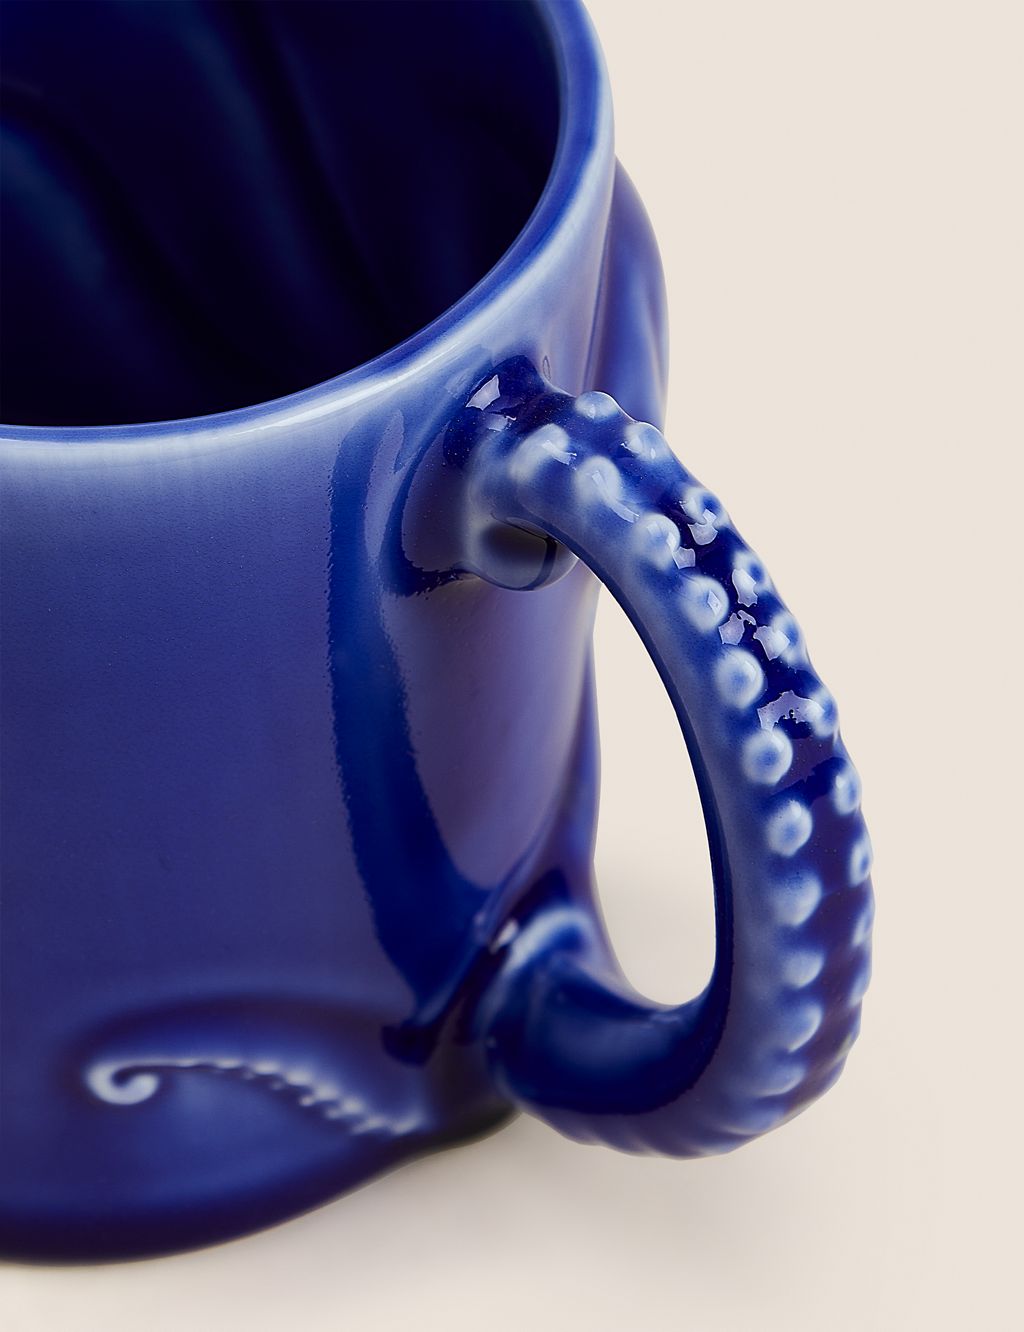 Octopus Mug 2 of 4